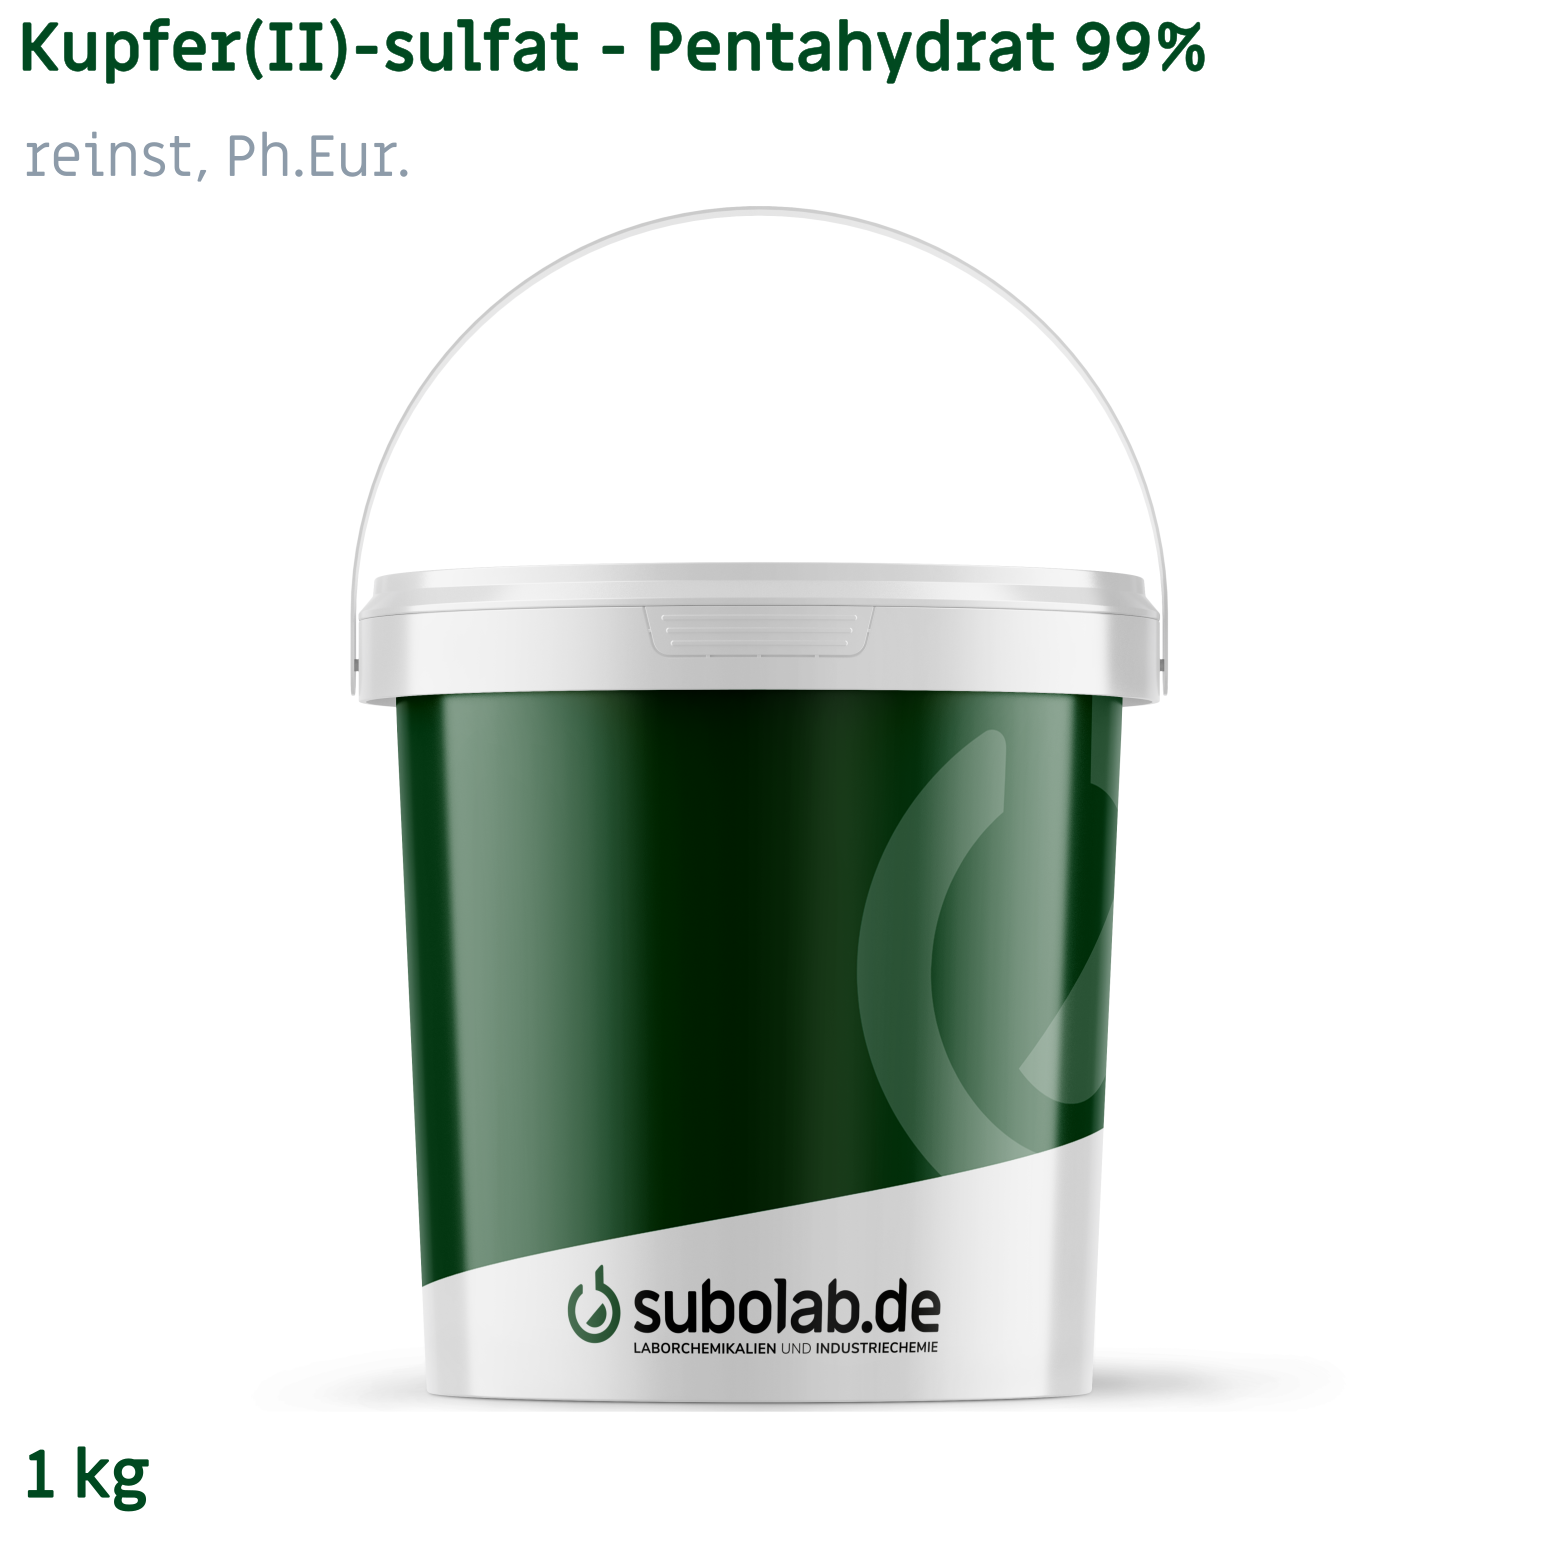 Bild von Kupfer(II)-sulfat - Pentahydrat 99% reinst, Ph.Eur. (1 kg)